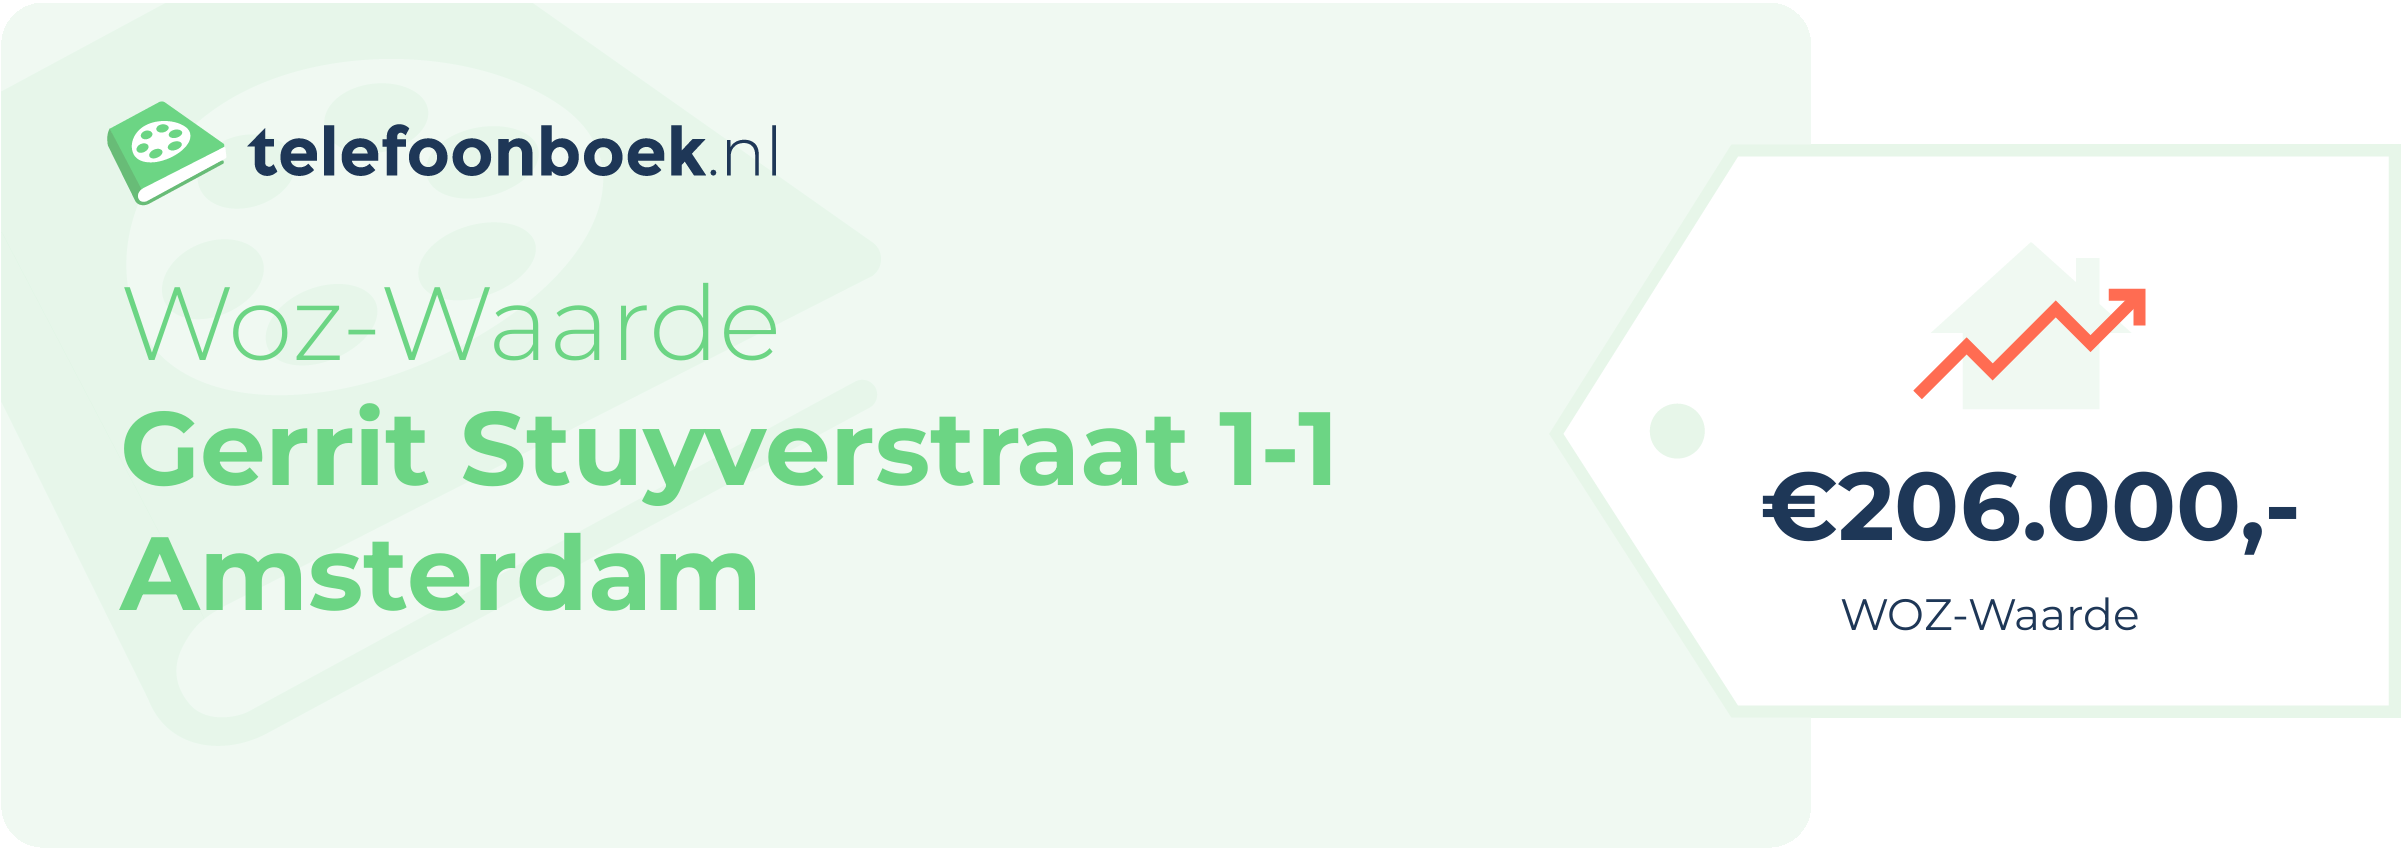 WOZ-waarde Gerrit Stuyverstraat 1-1 Amsterdam